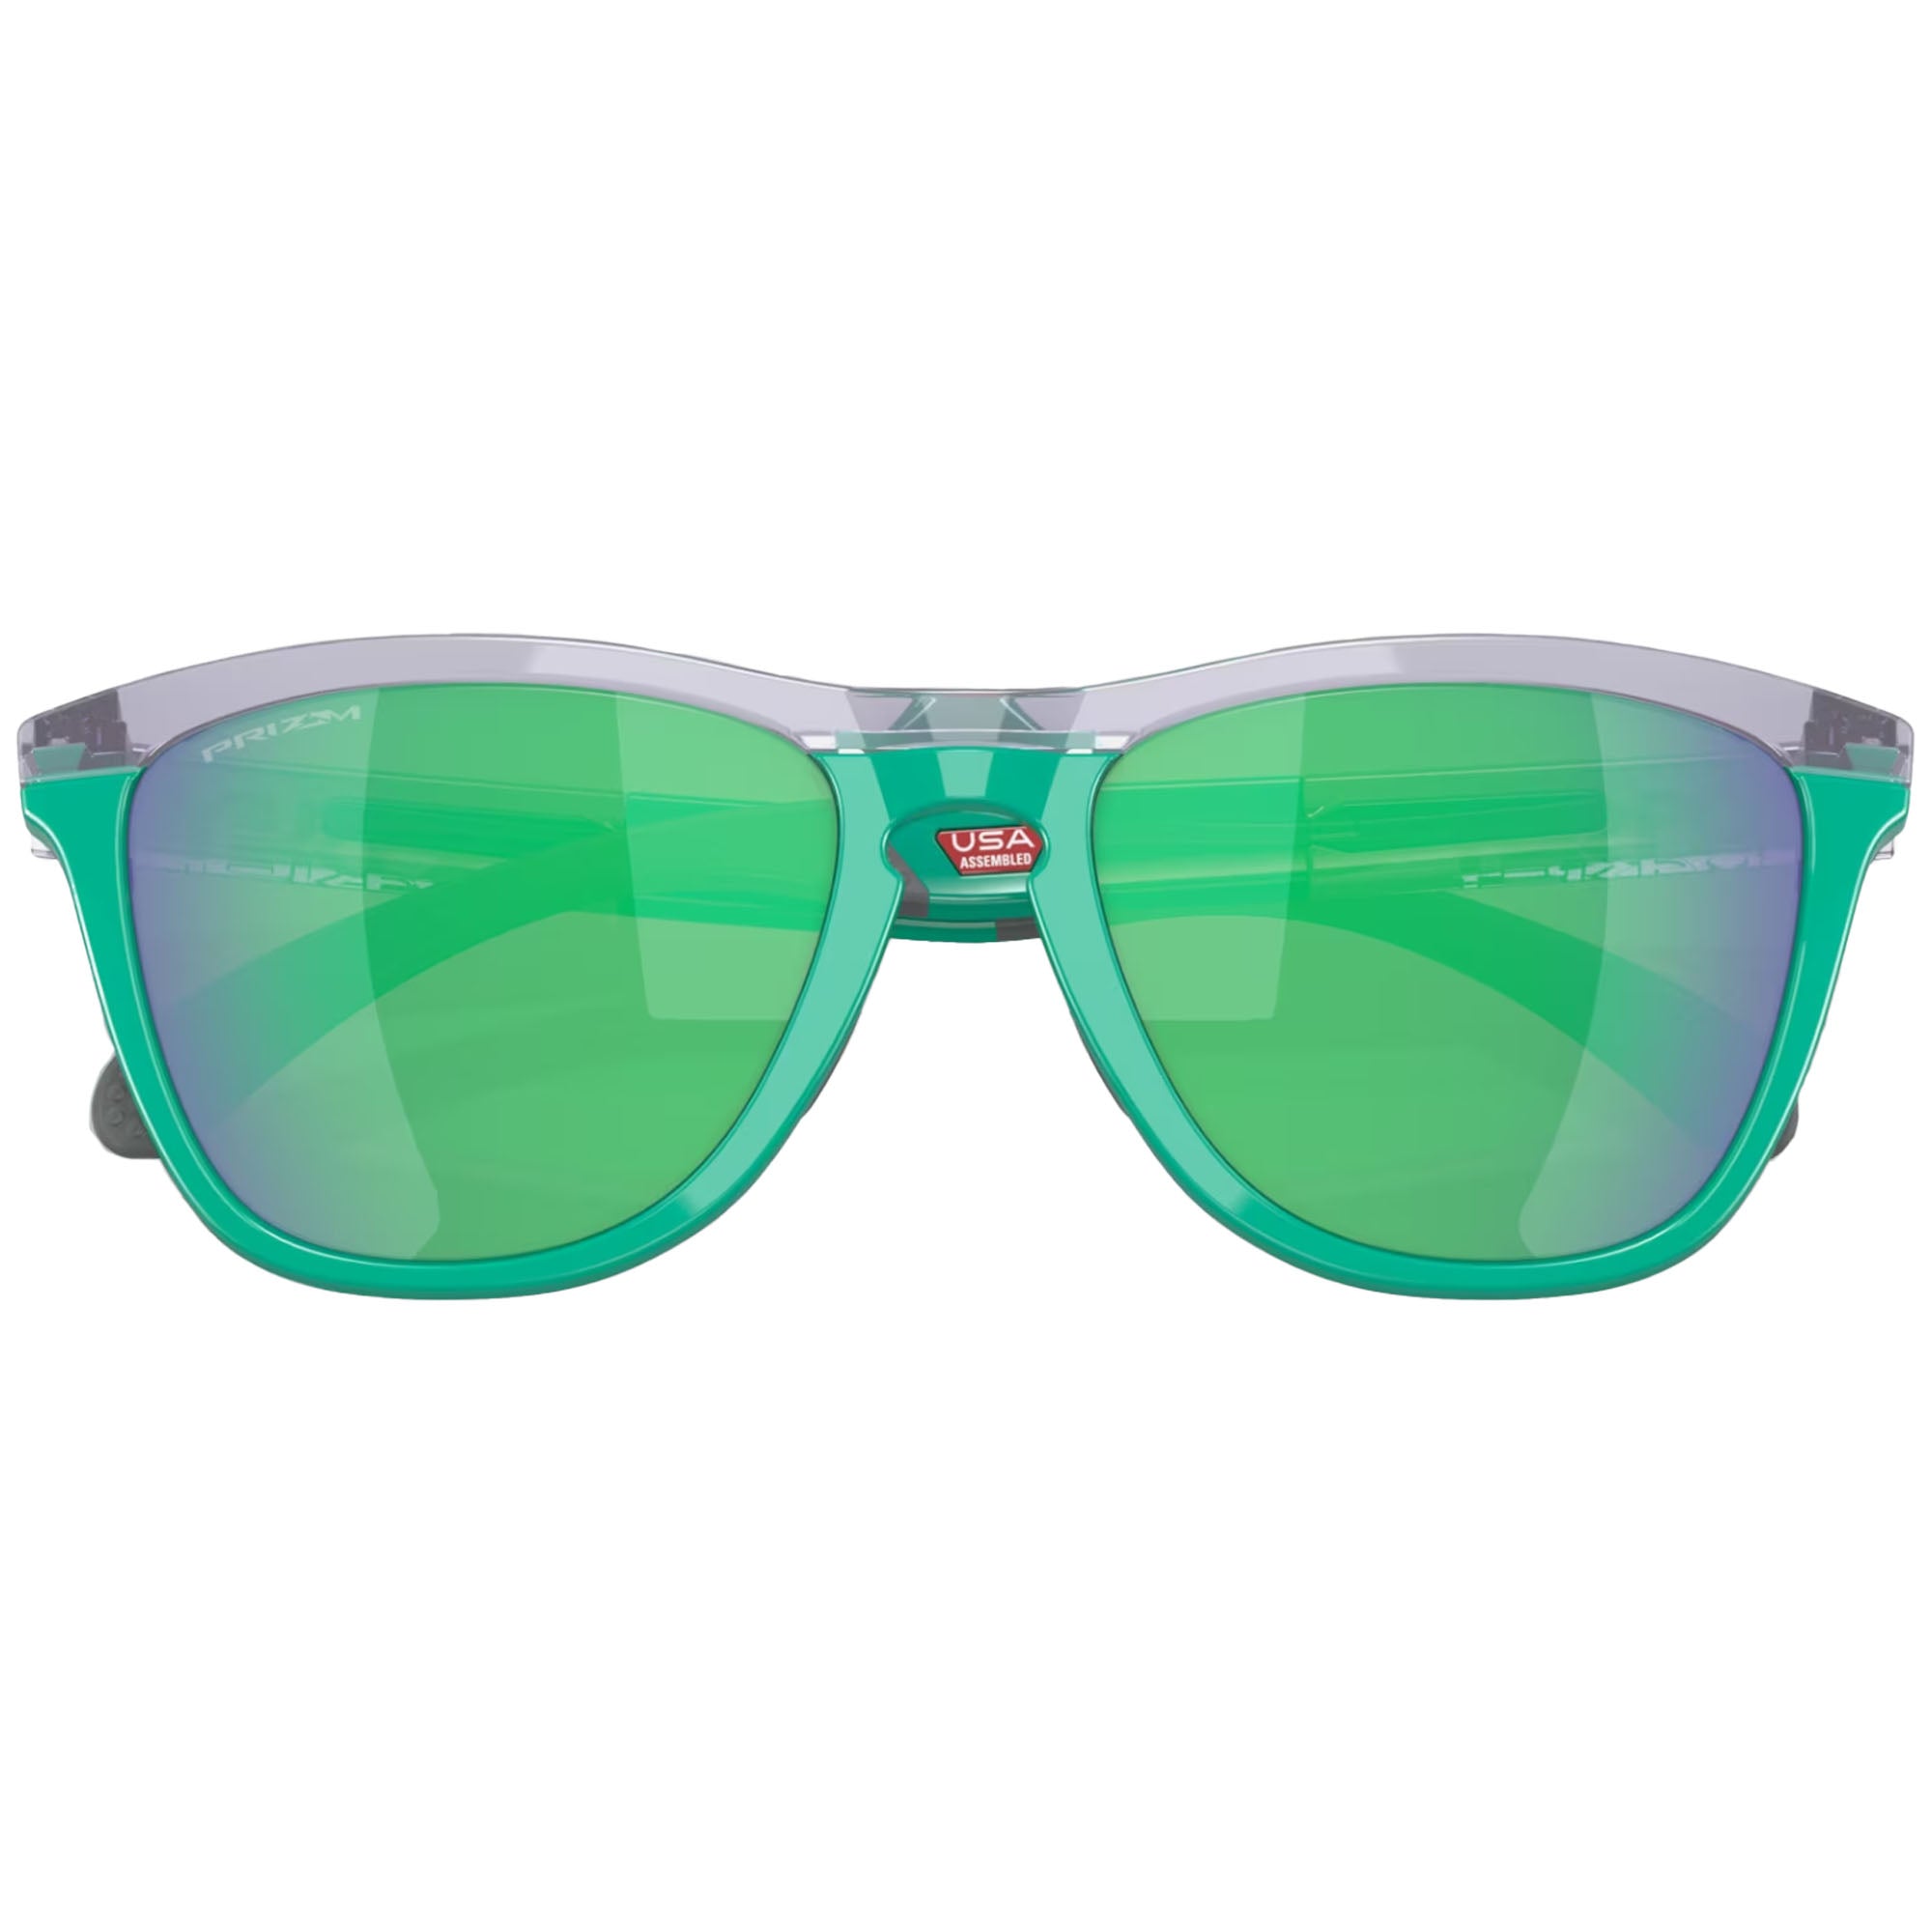 Oakley OO9284 Frogskins Range Sunglasses (Lilac Celeste)